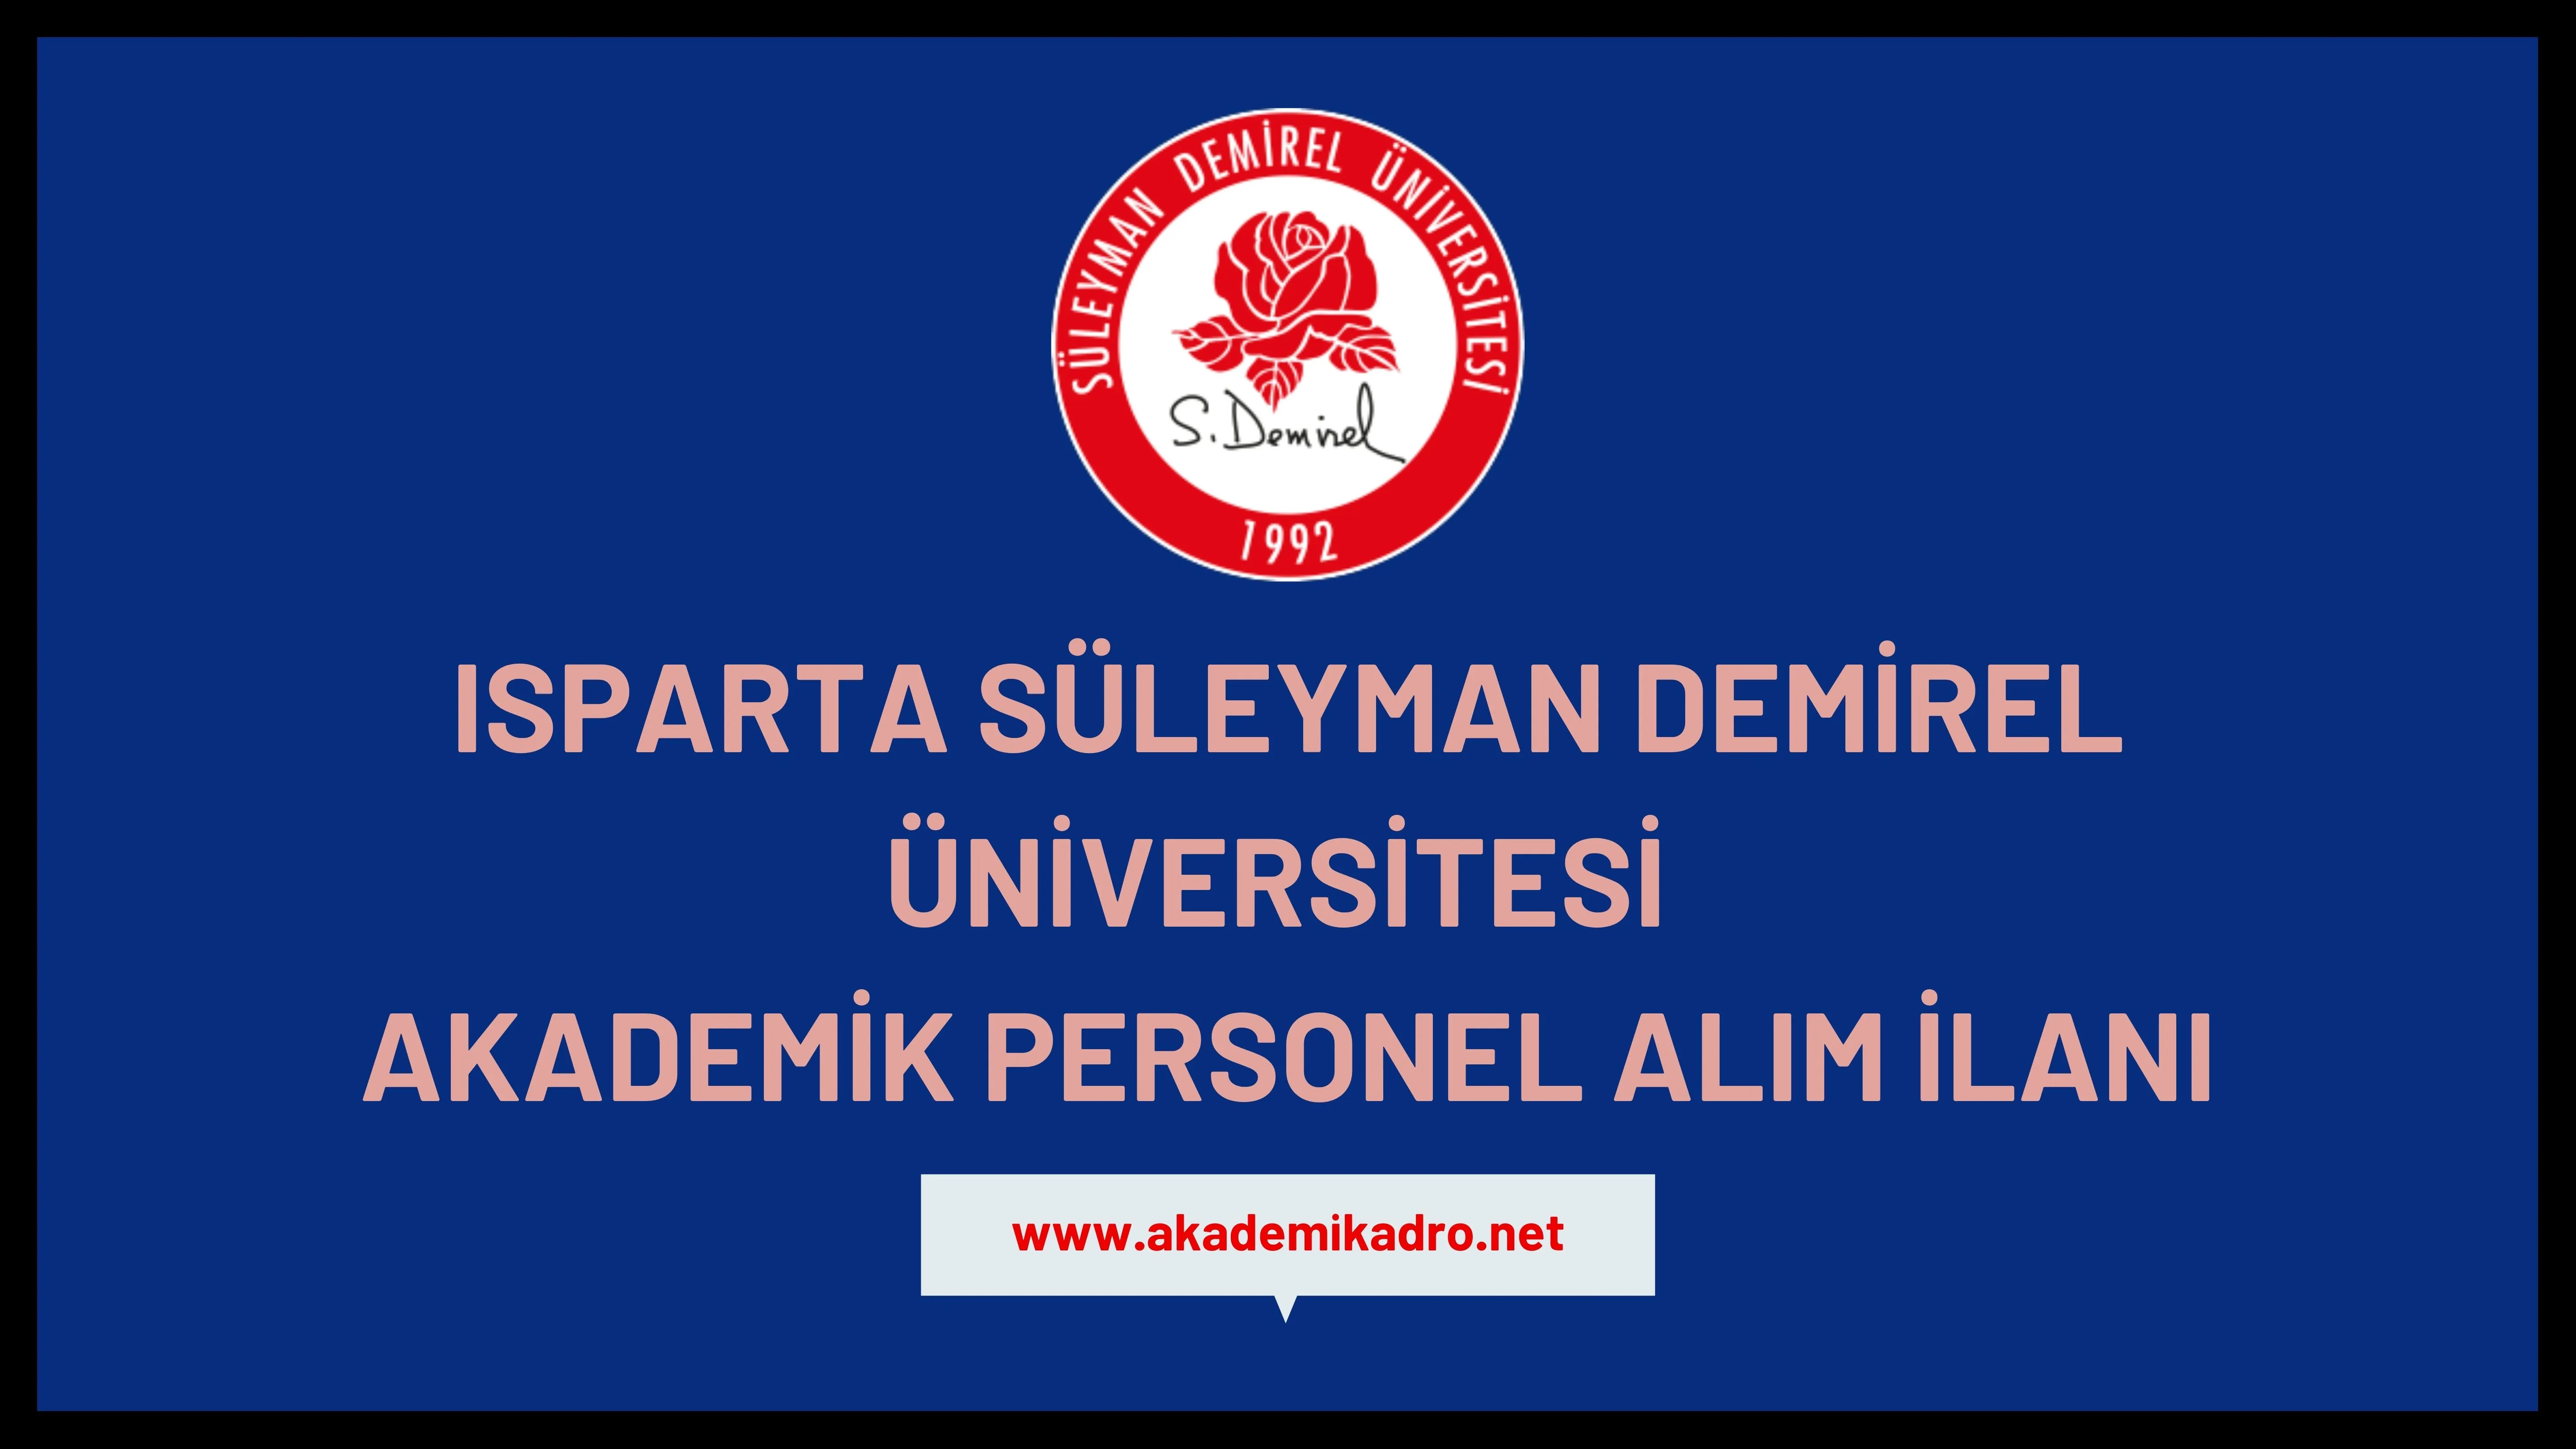 Süleyman Demirel Üniversitesi birçok alandan 15 öğretim üyesi alacak.